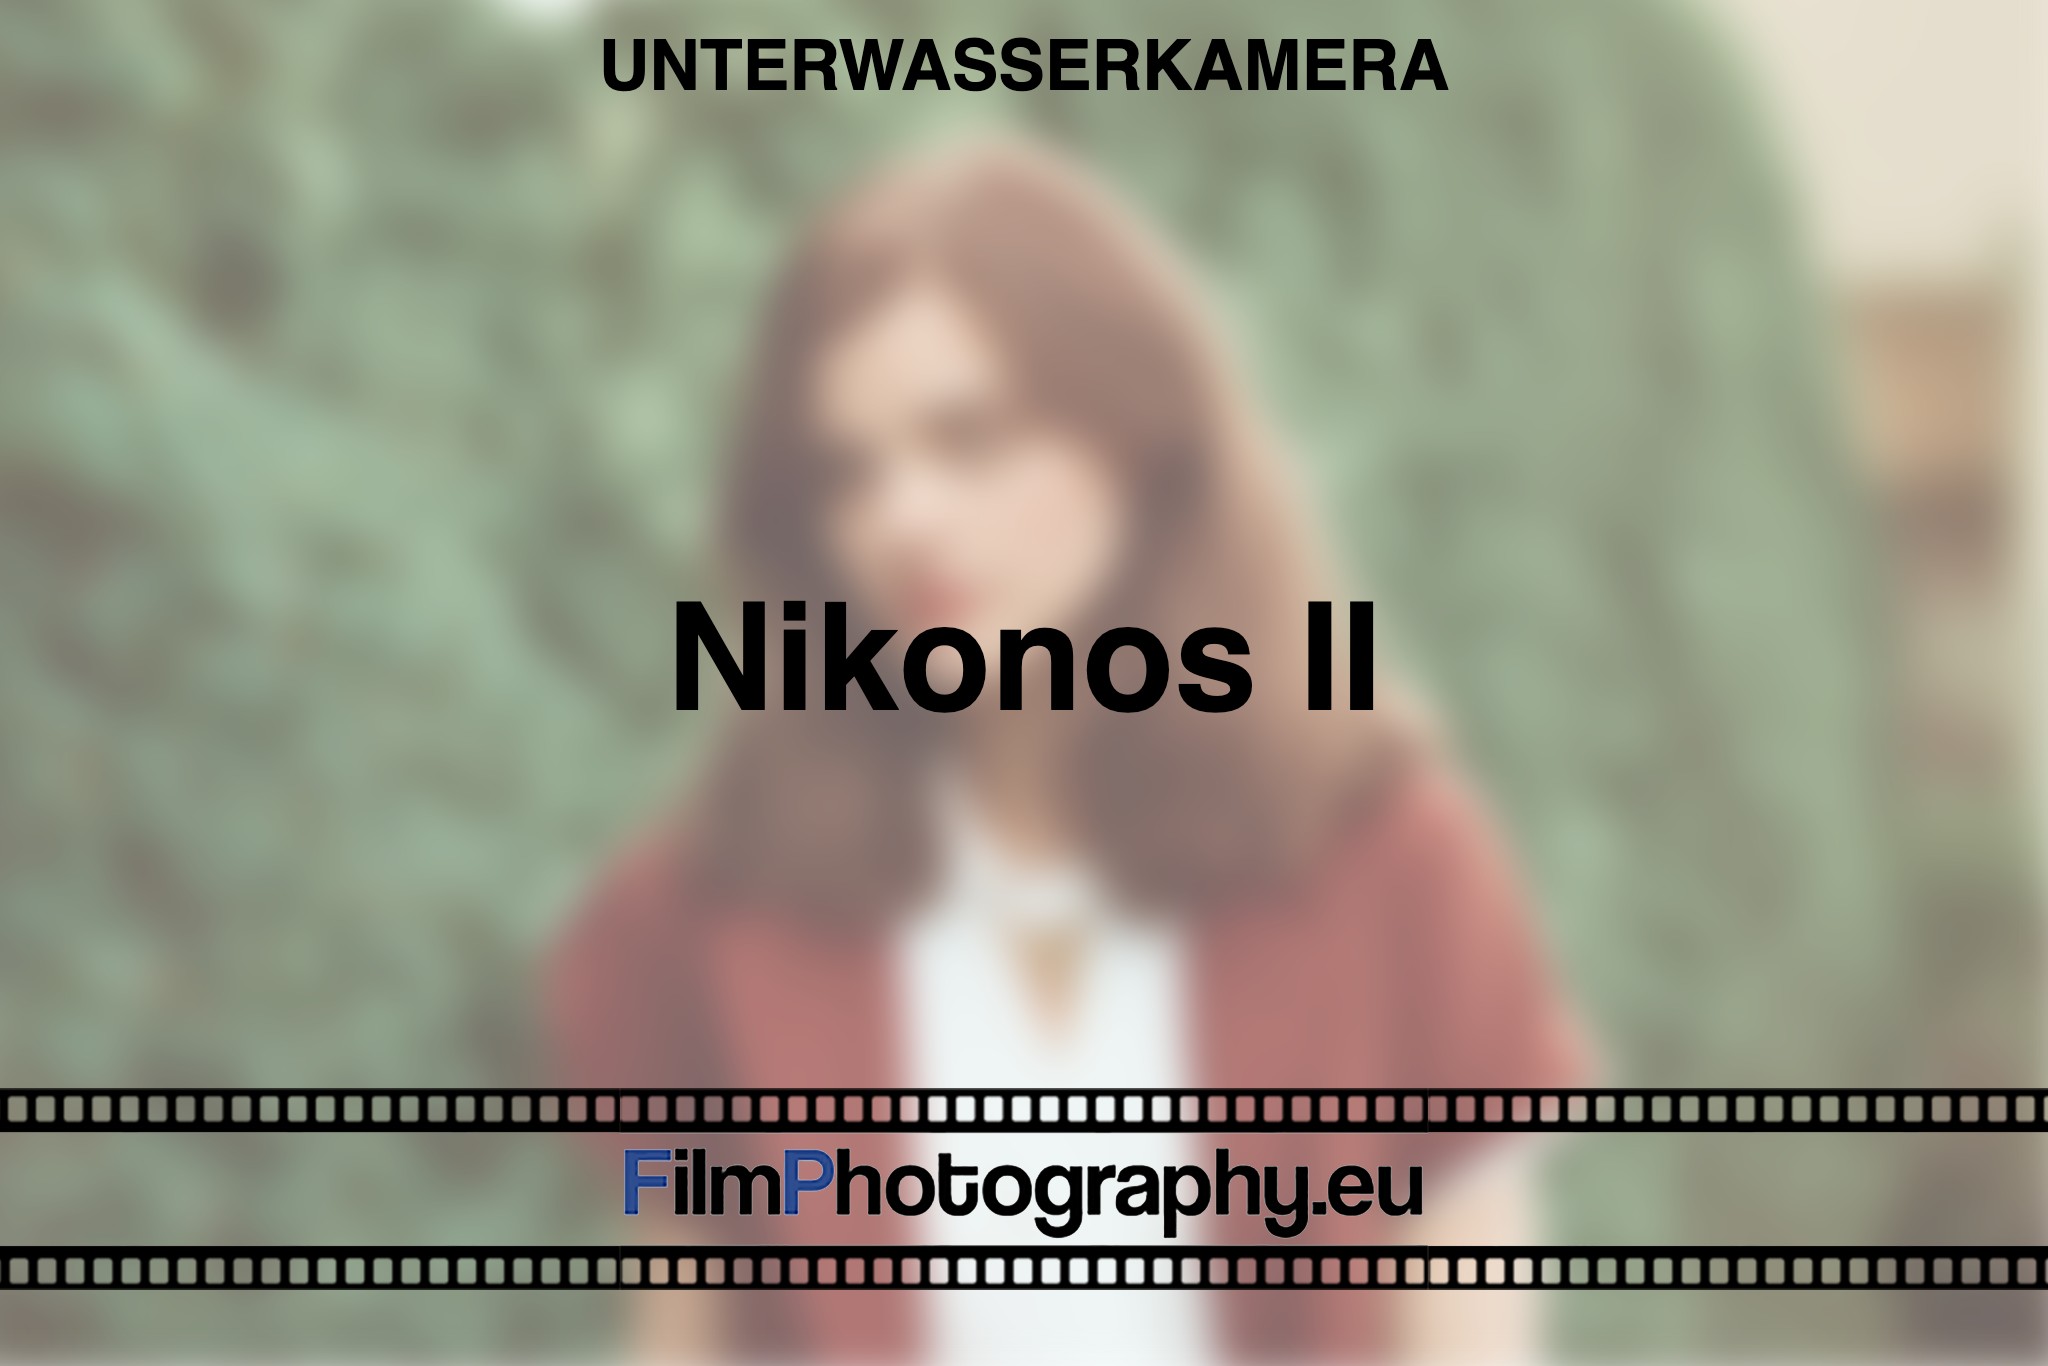 nikonos-ii-unterwasserkamera-bnv